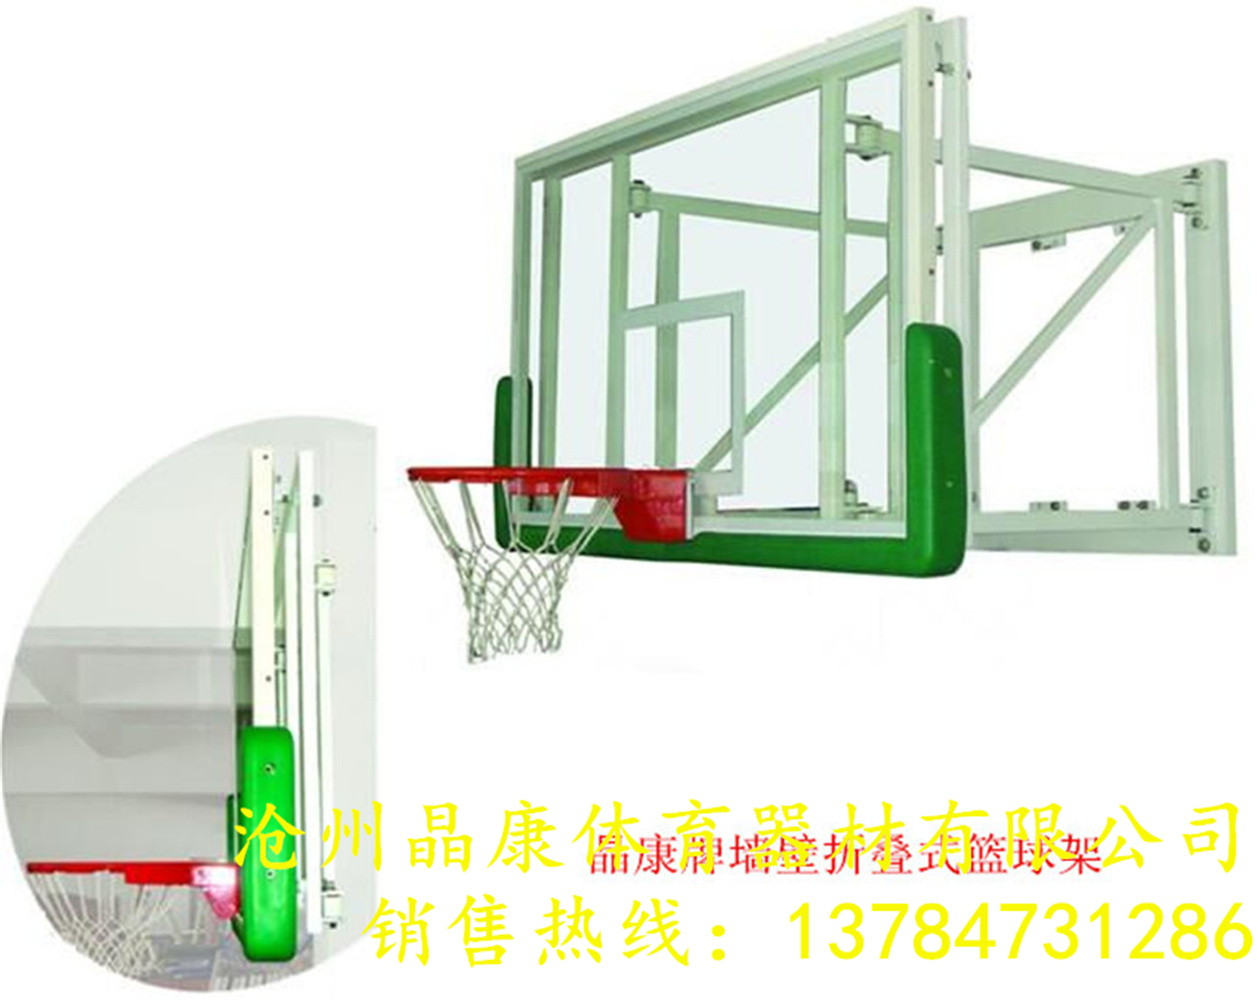 晶康牌配安全防爆钢化玻璃篮球板升降篮球架性能良好墙壁式篮球架厂家实地安装